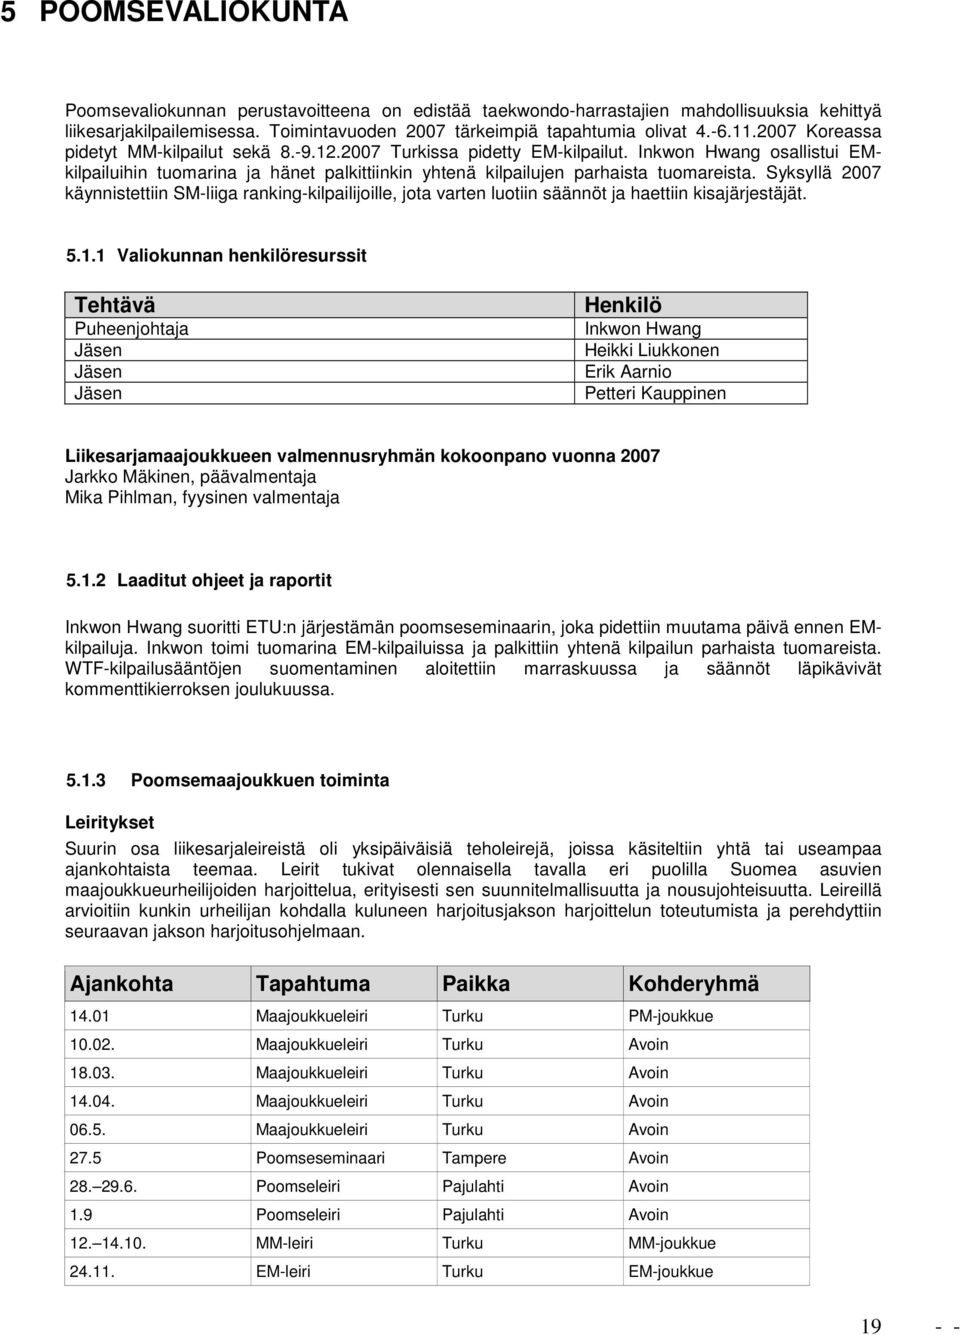 Syksyllä 2007 käynnistettiin SM-liiga ranking-kilpailijoille, jota varten luotiin säännöt ja haettiin kisajärjestäjät. 5.1.